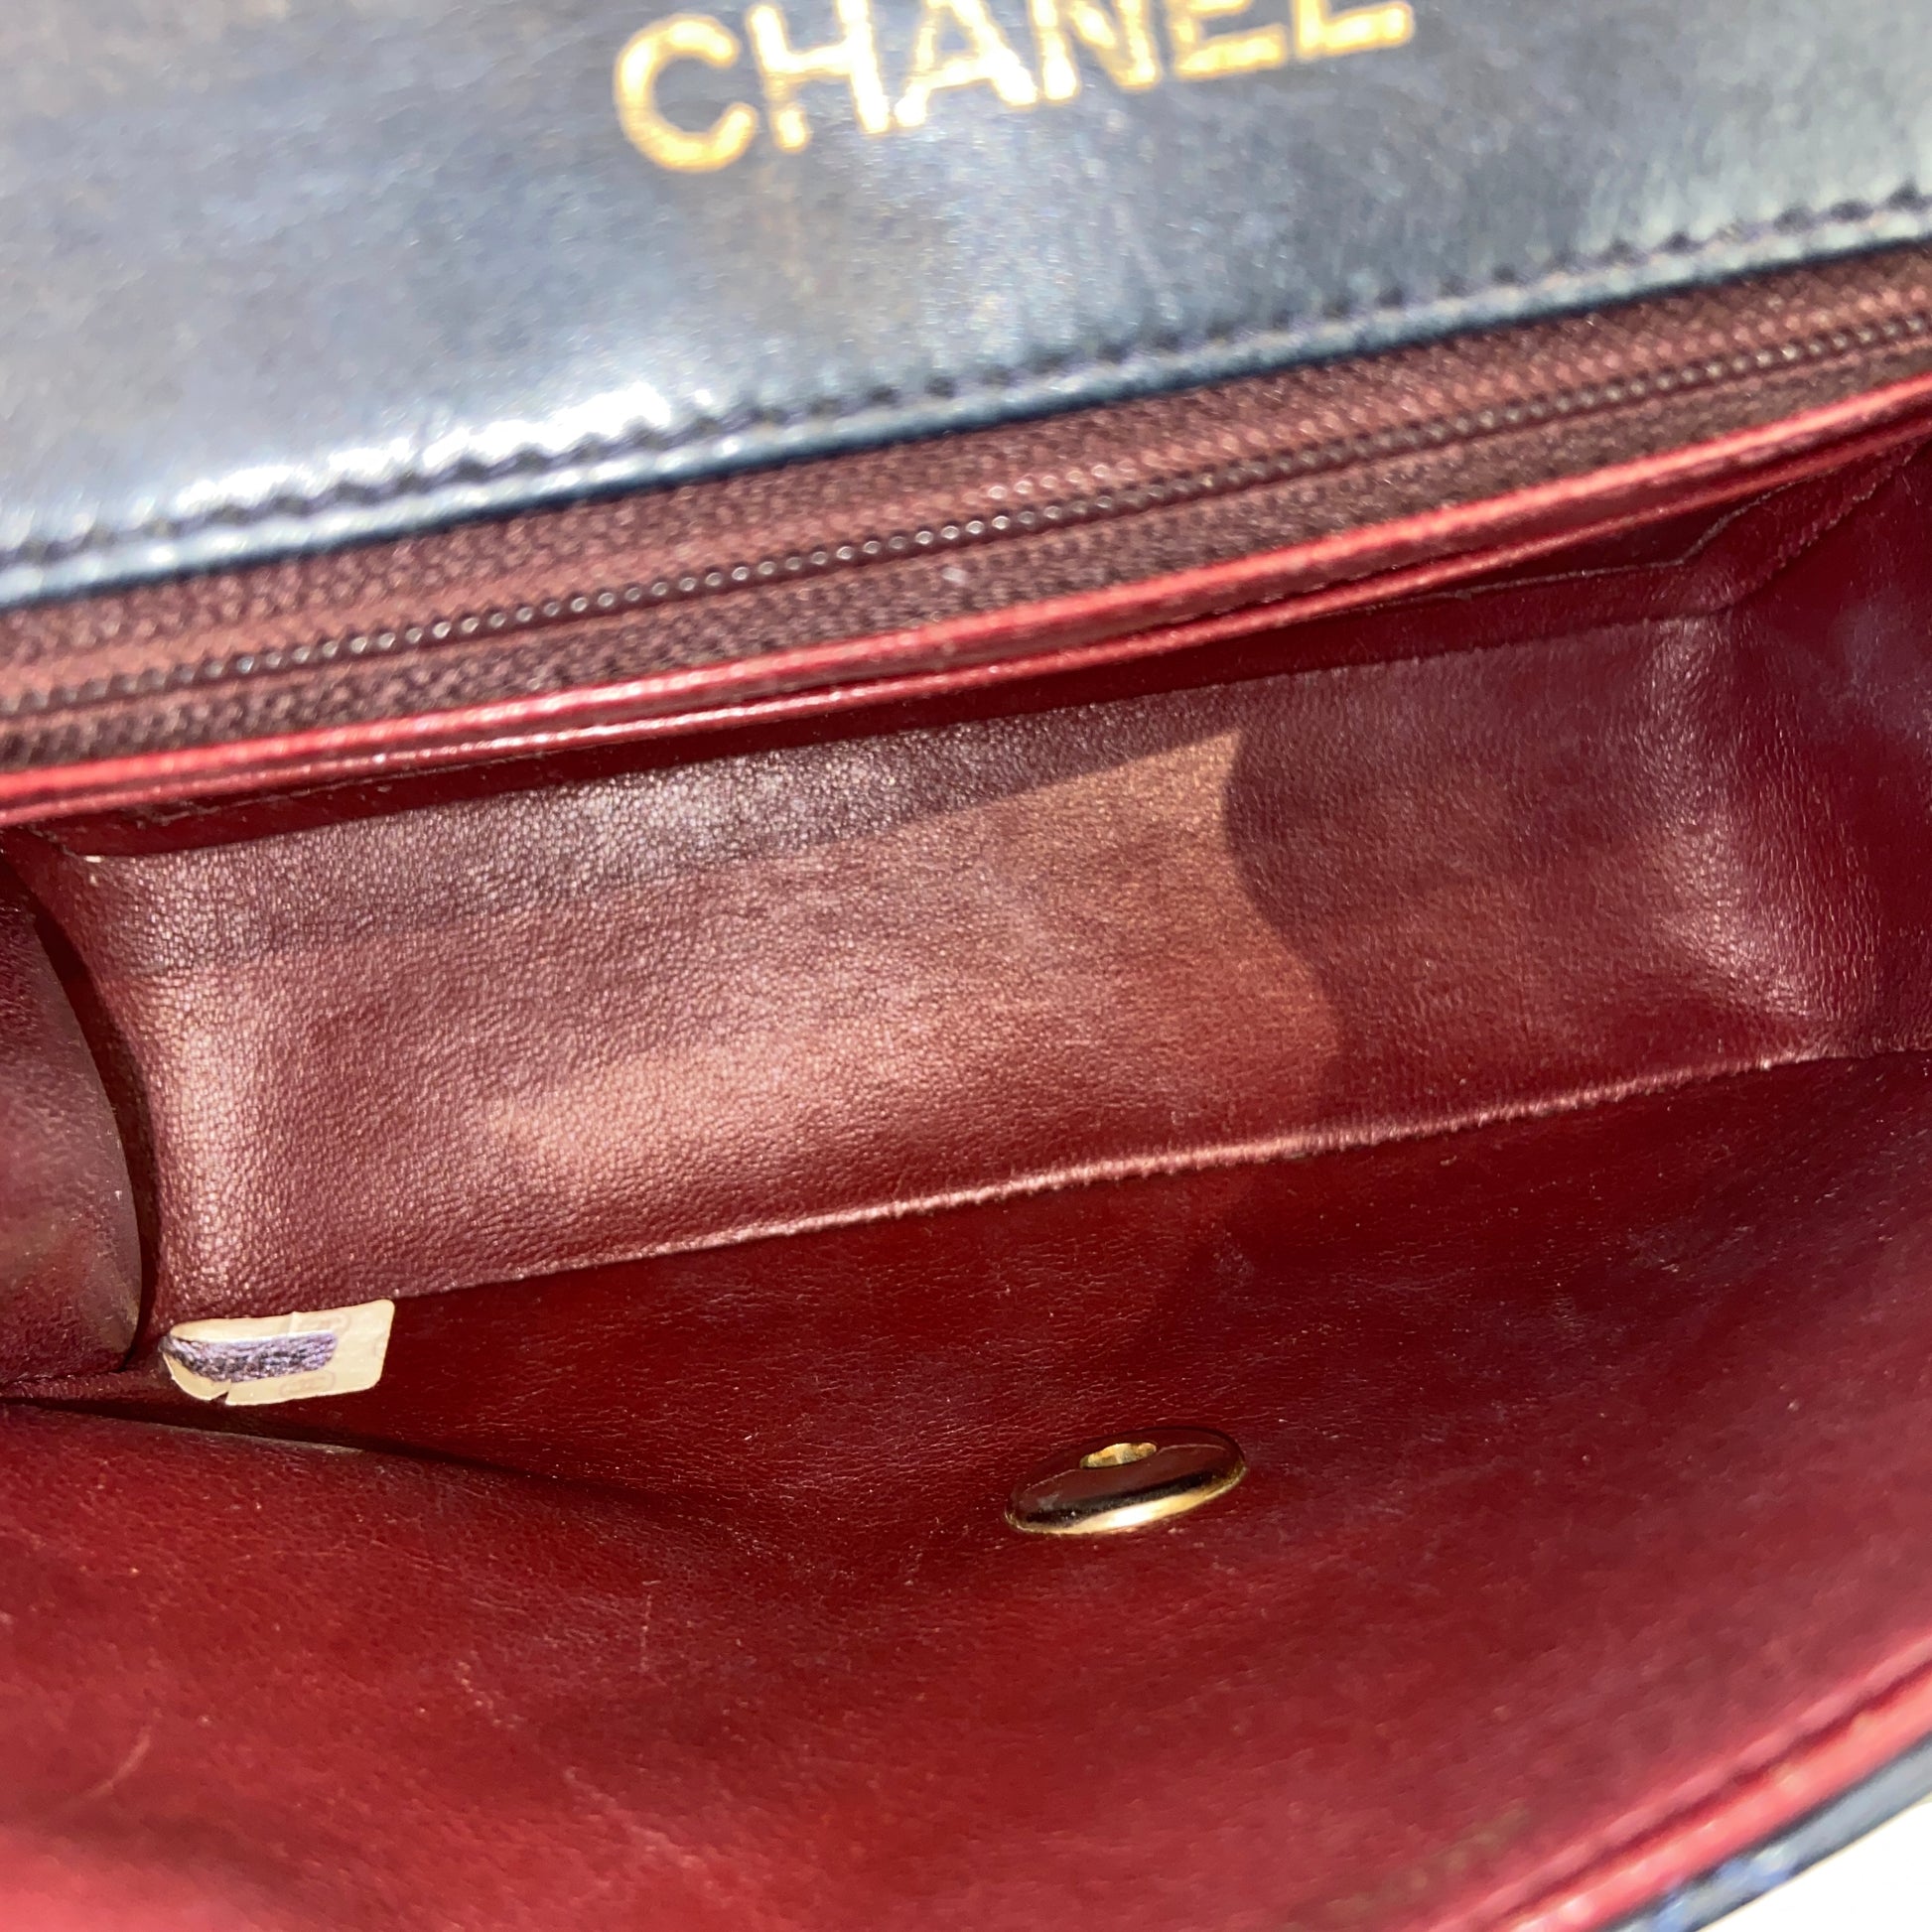 Chanel Borsa a tracolla Chanel Gabrielle modello grande in pelle trapuntata  blu e pelle liscia nera - RvceShops's Closet - Chanel coco-parfum 7